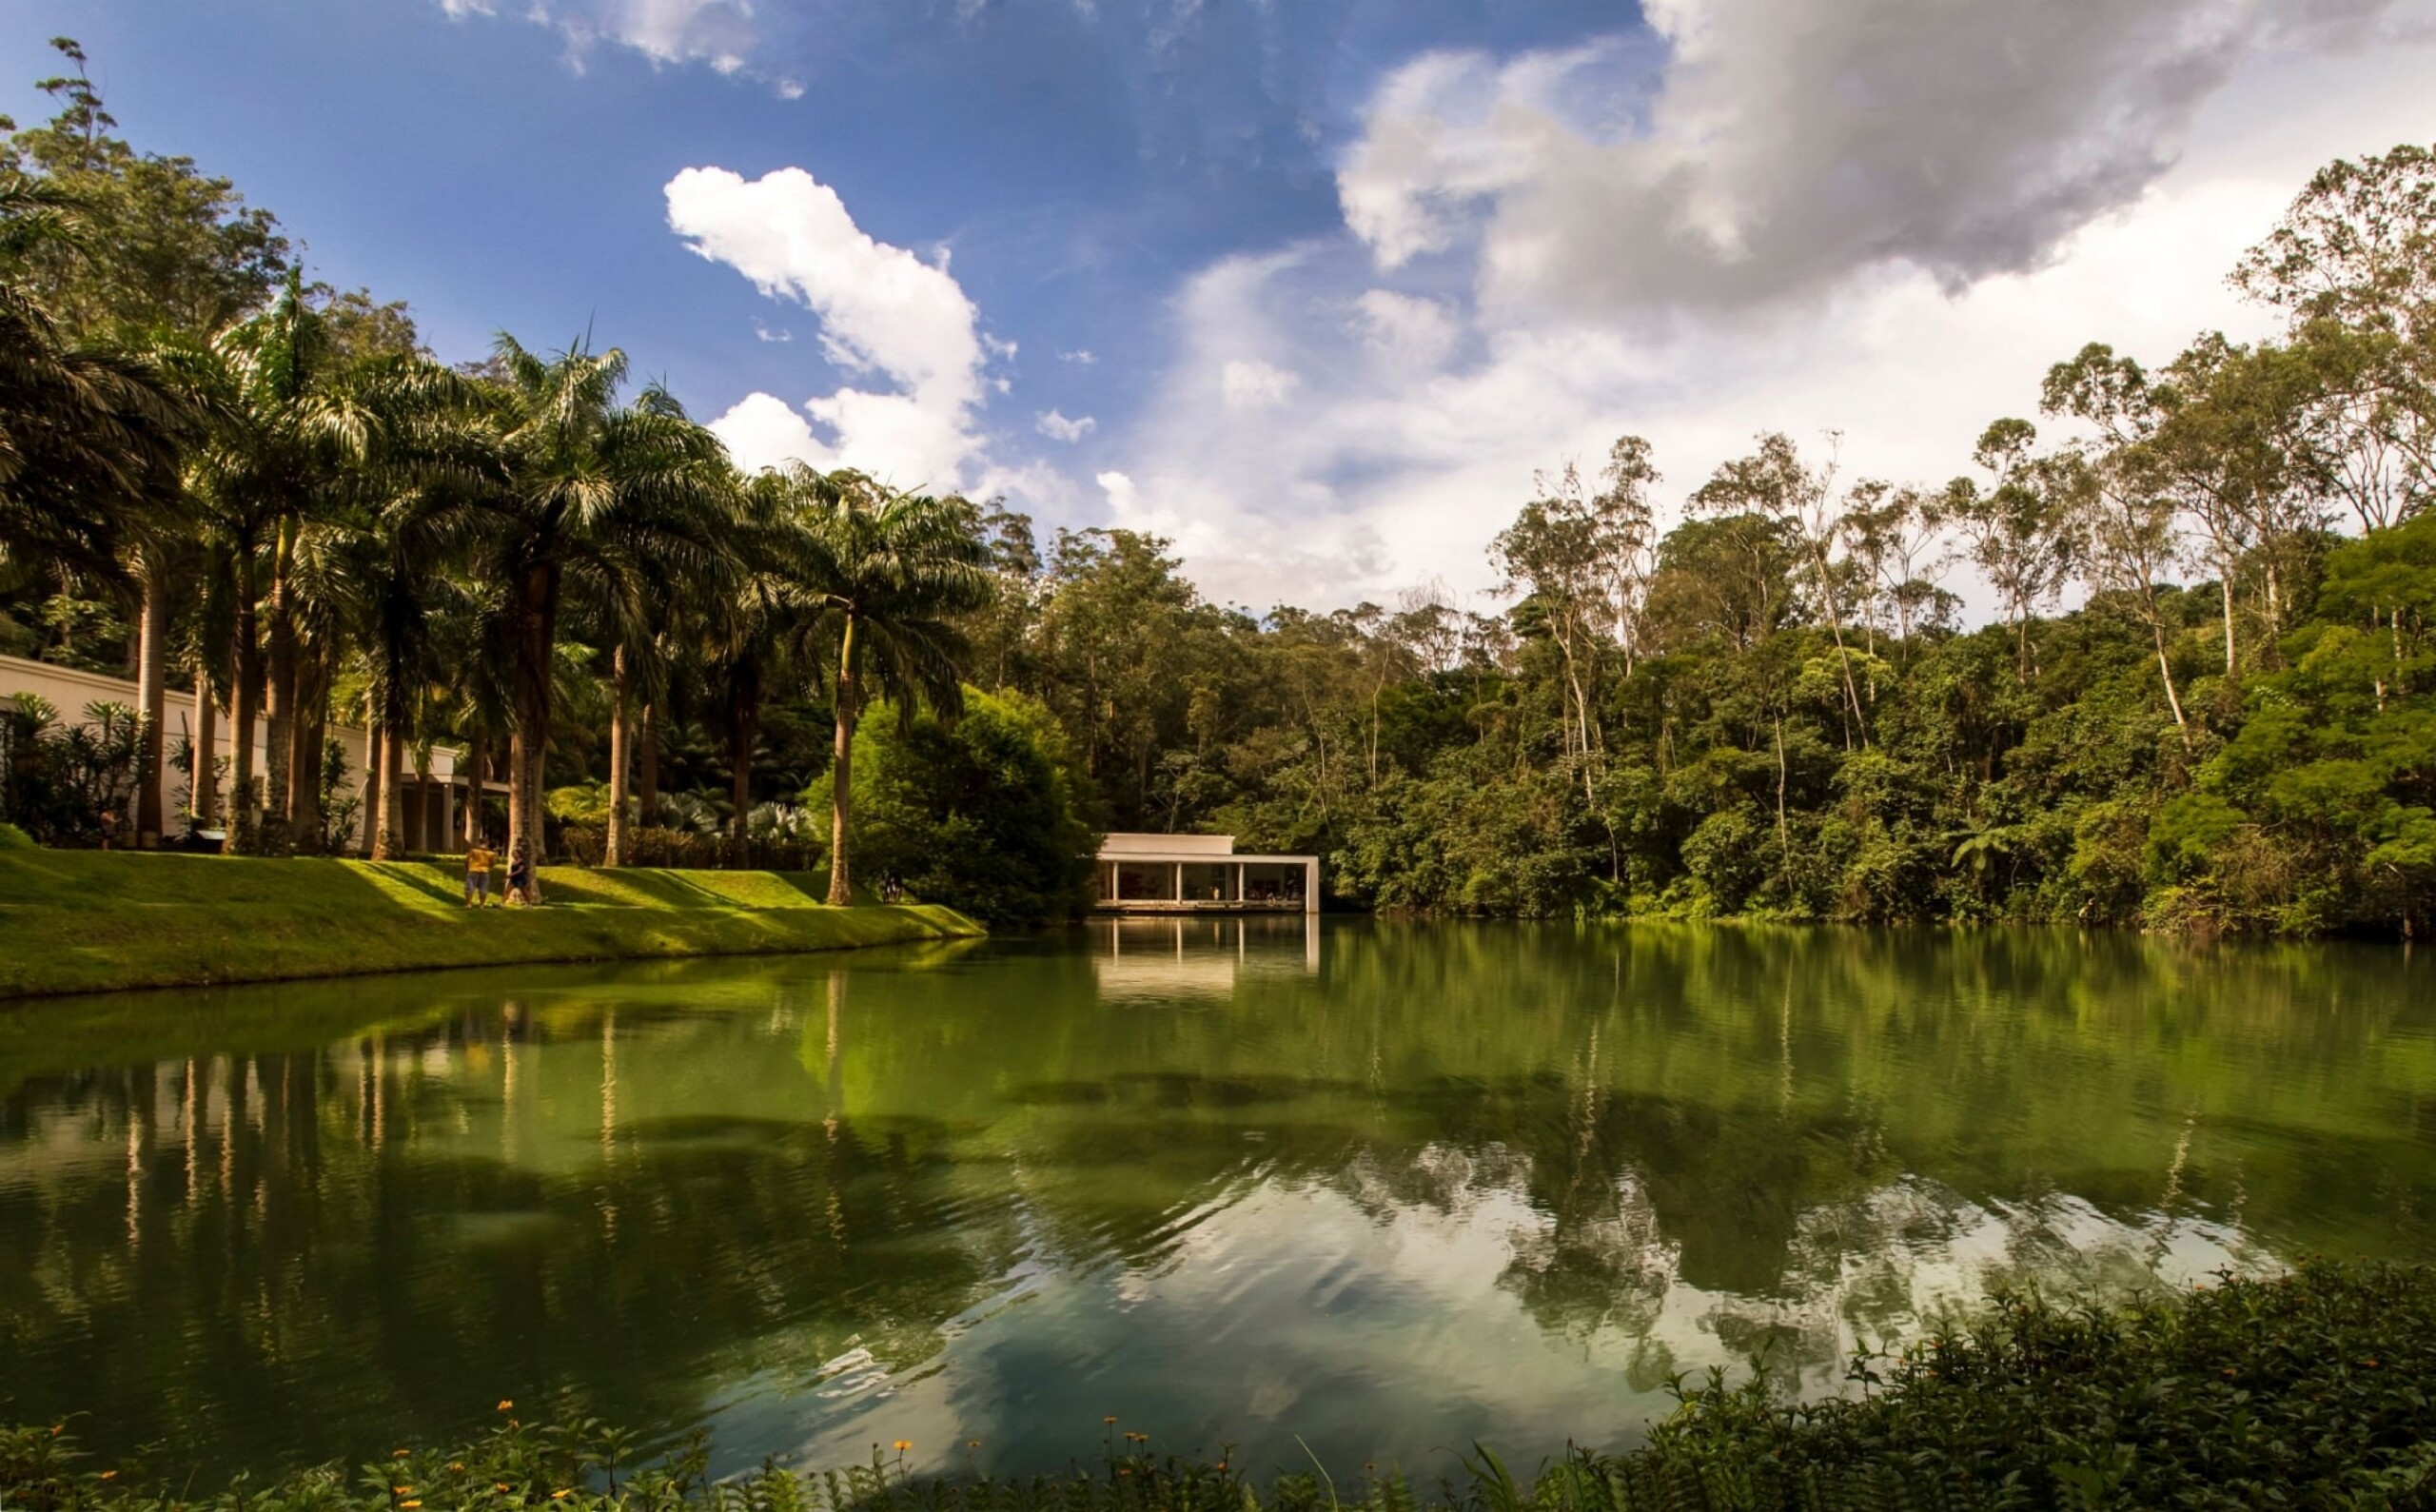 Destinos para vivenciar aspectos naturais | Instituto Inhotim em Brumadinho, Minas Gerais | Conexão123